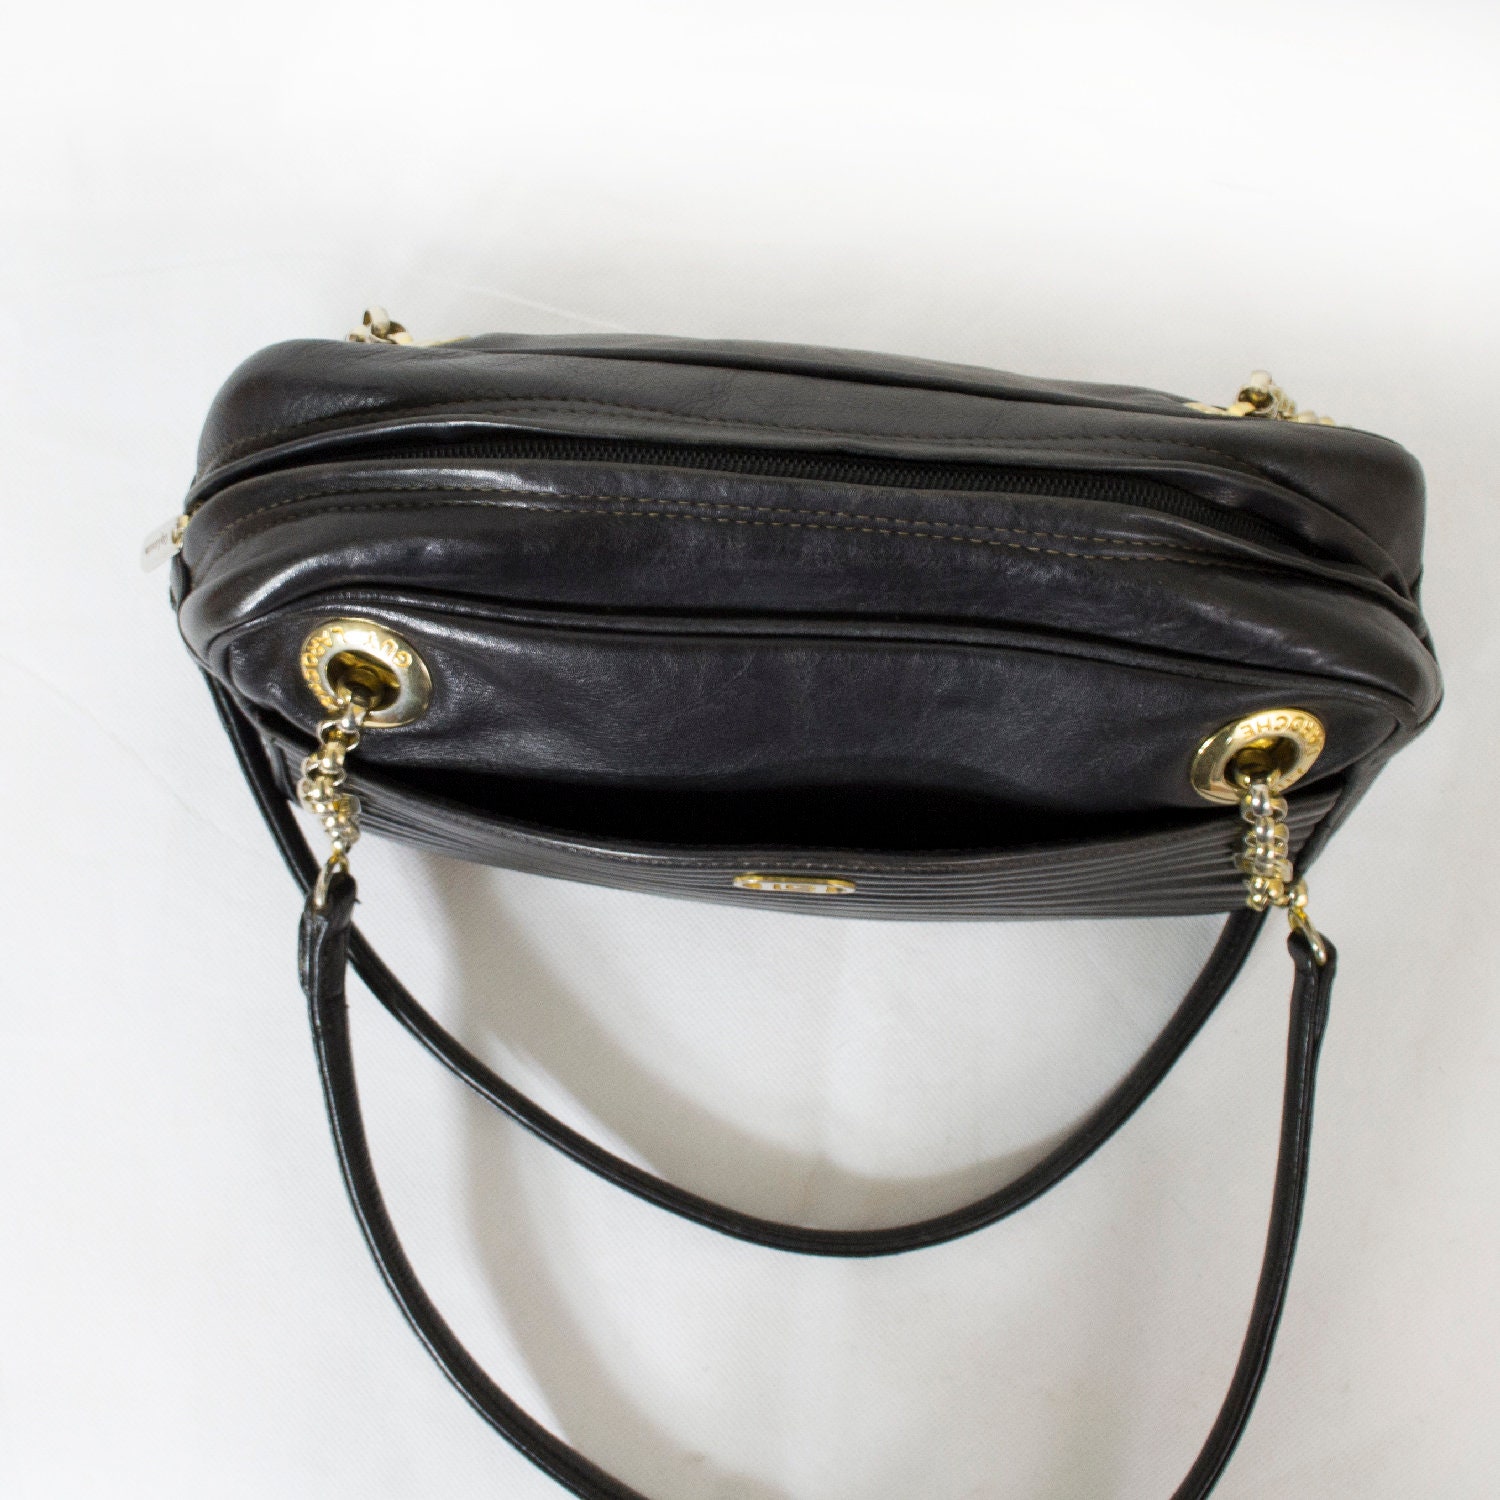 Ivory Chanel Bag - 45 For Sale on 1stDibs